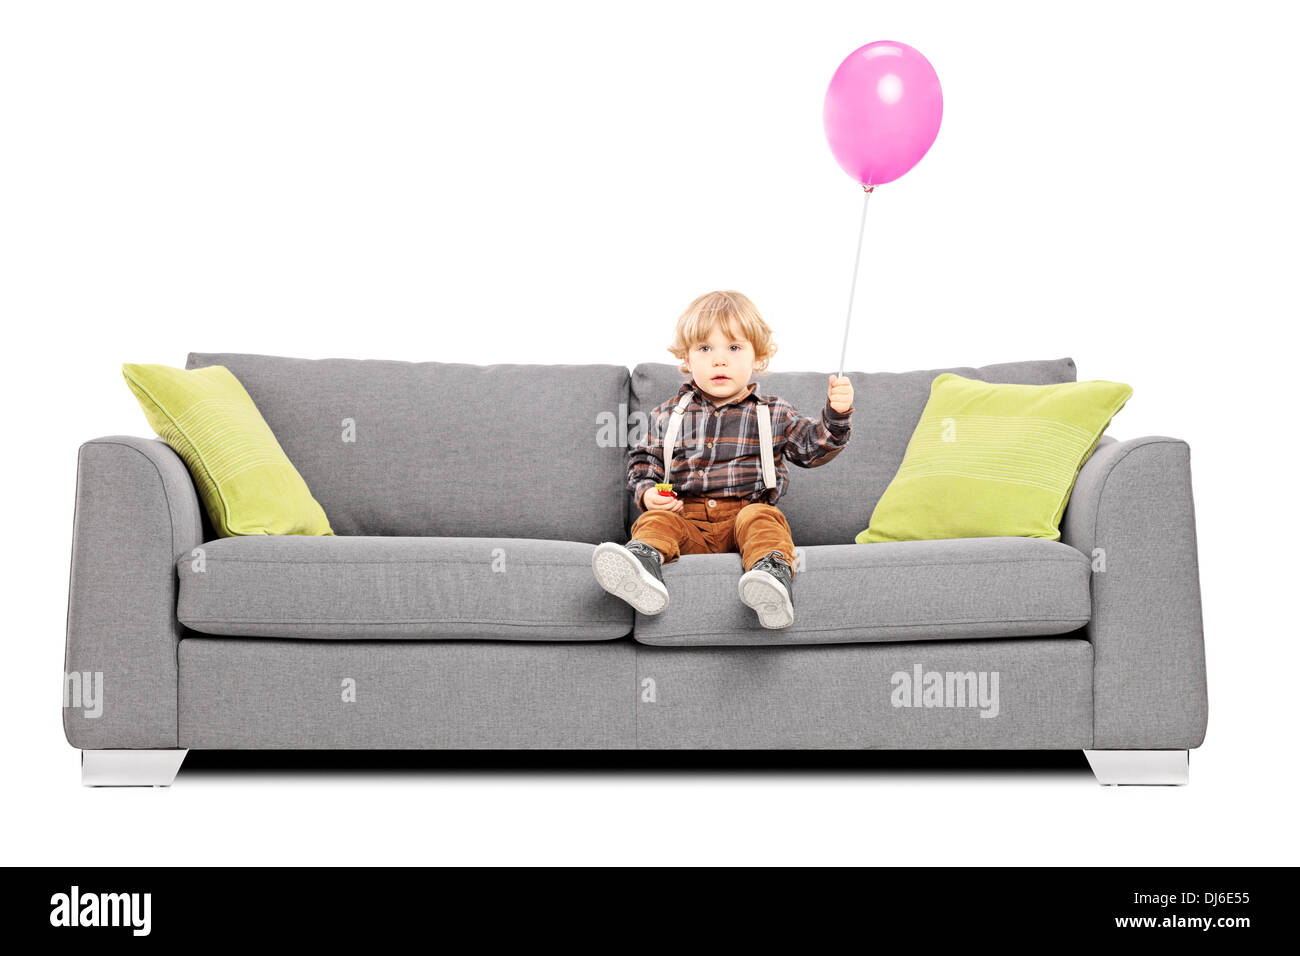 Adorable petit garçon assis sur le canapé avec un ballon à air chaud Banque D'Images